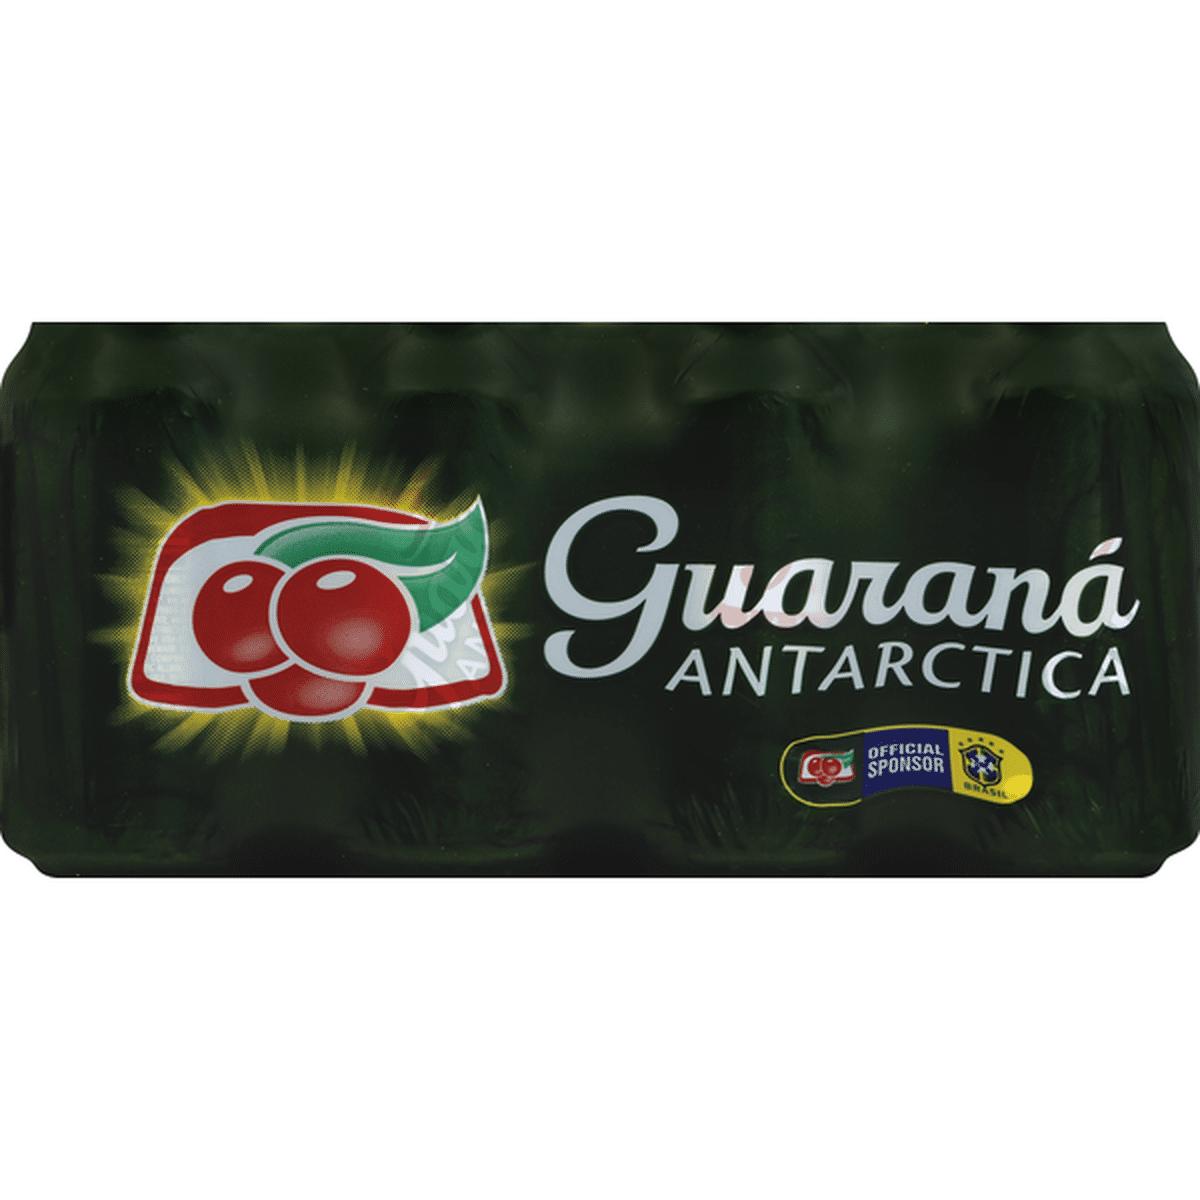 Guaraná Antarctica Soda, Antarctica (11.83 fl oz) Delivery or